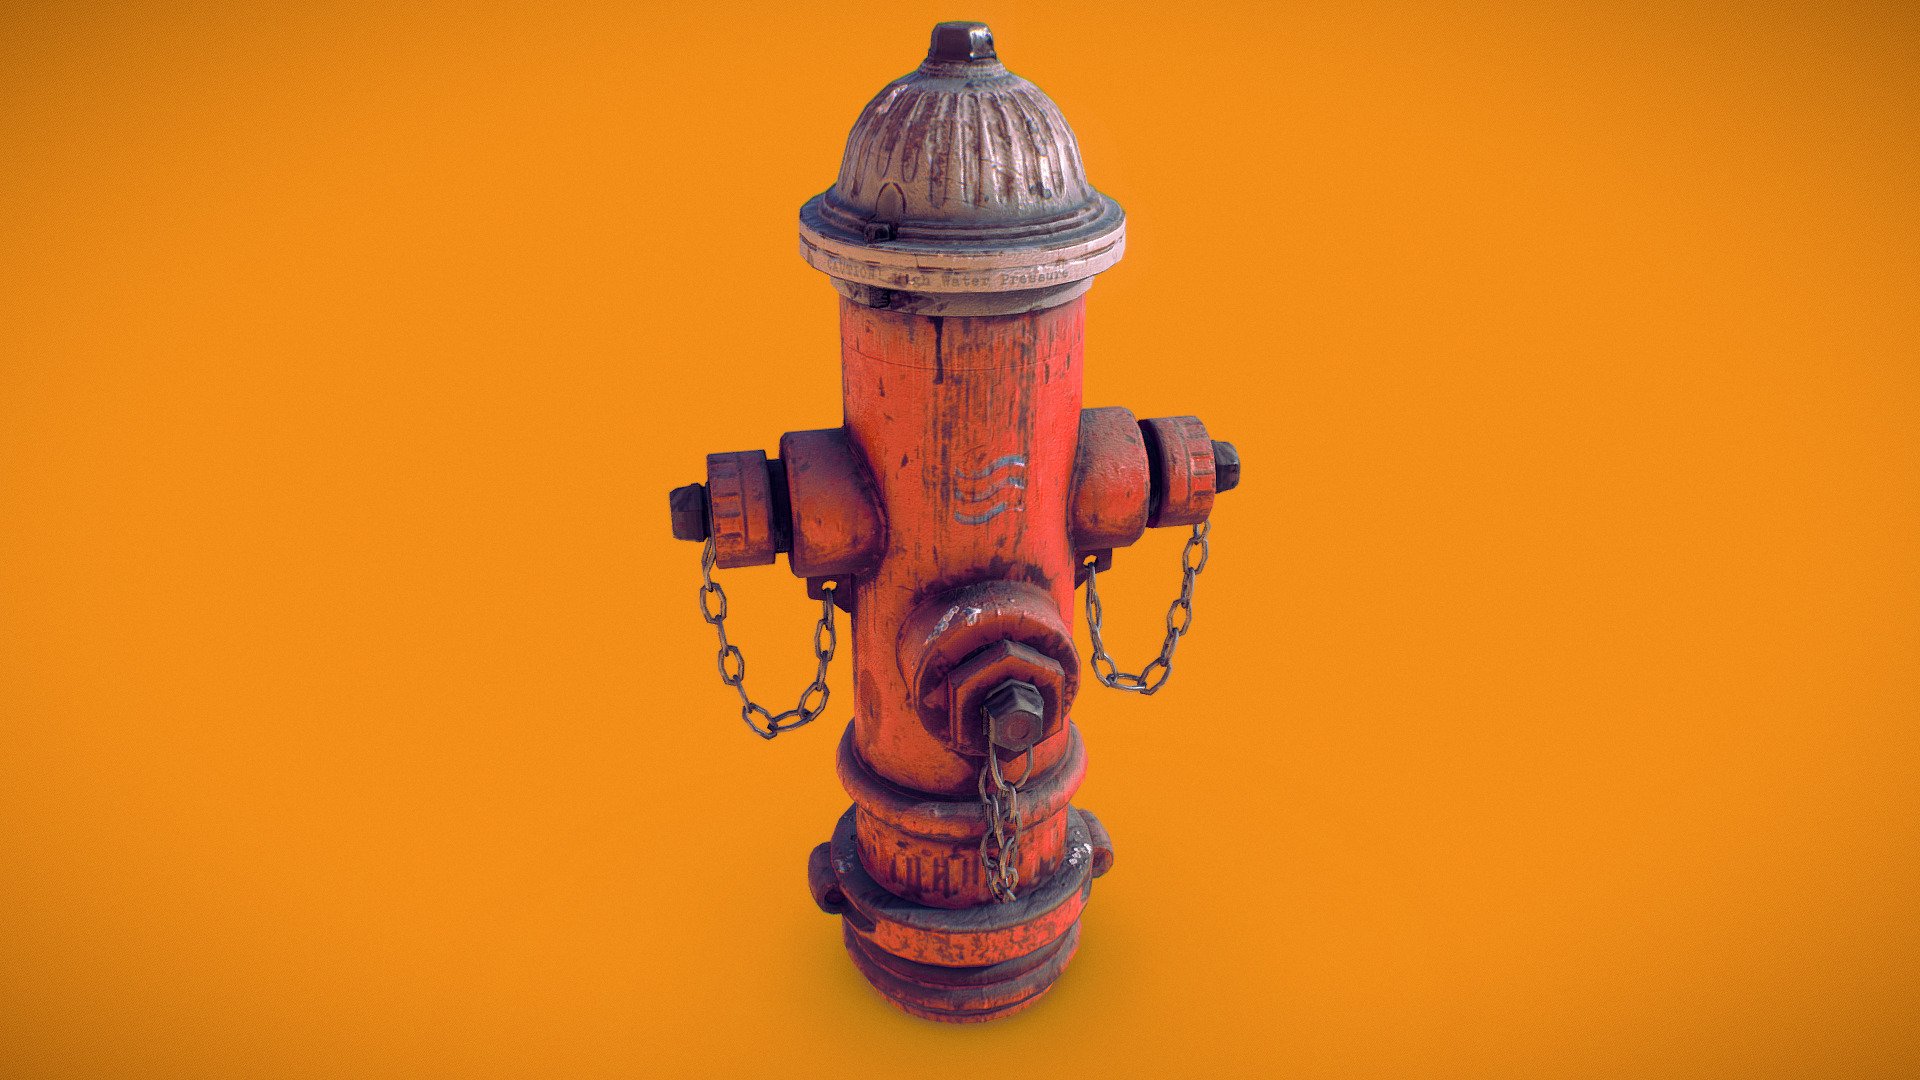 Fire Hydrant 
11/2017 - Fire Hydrant - Buy Royalty Free 3D model by Marcel Schanz (@mschanz) 3d model